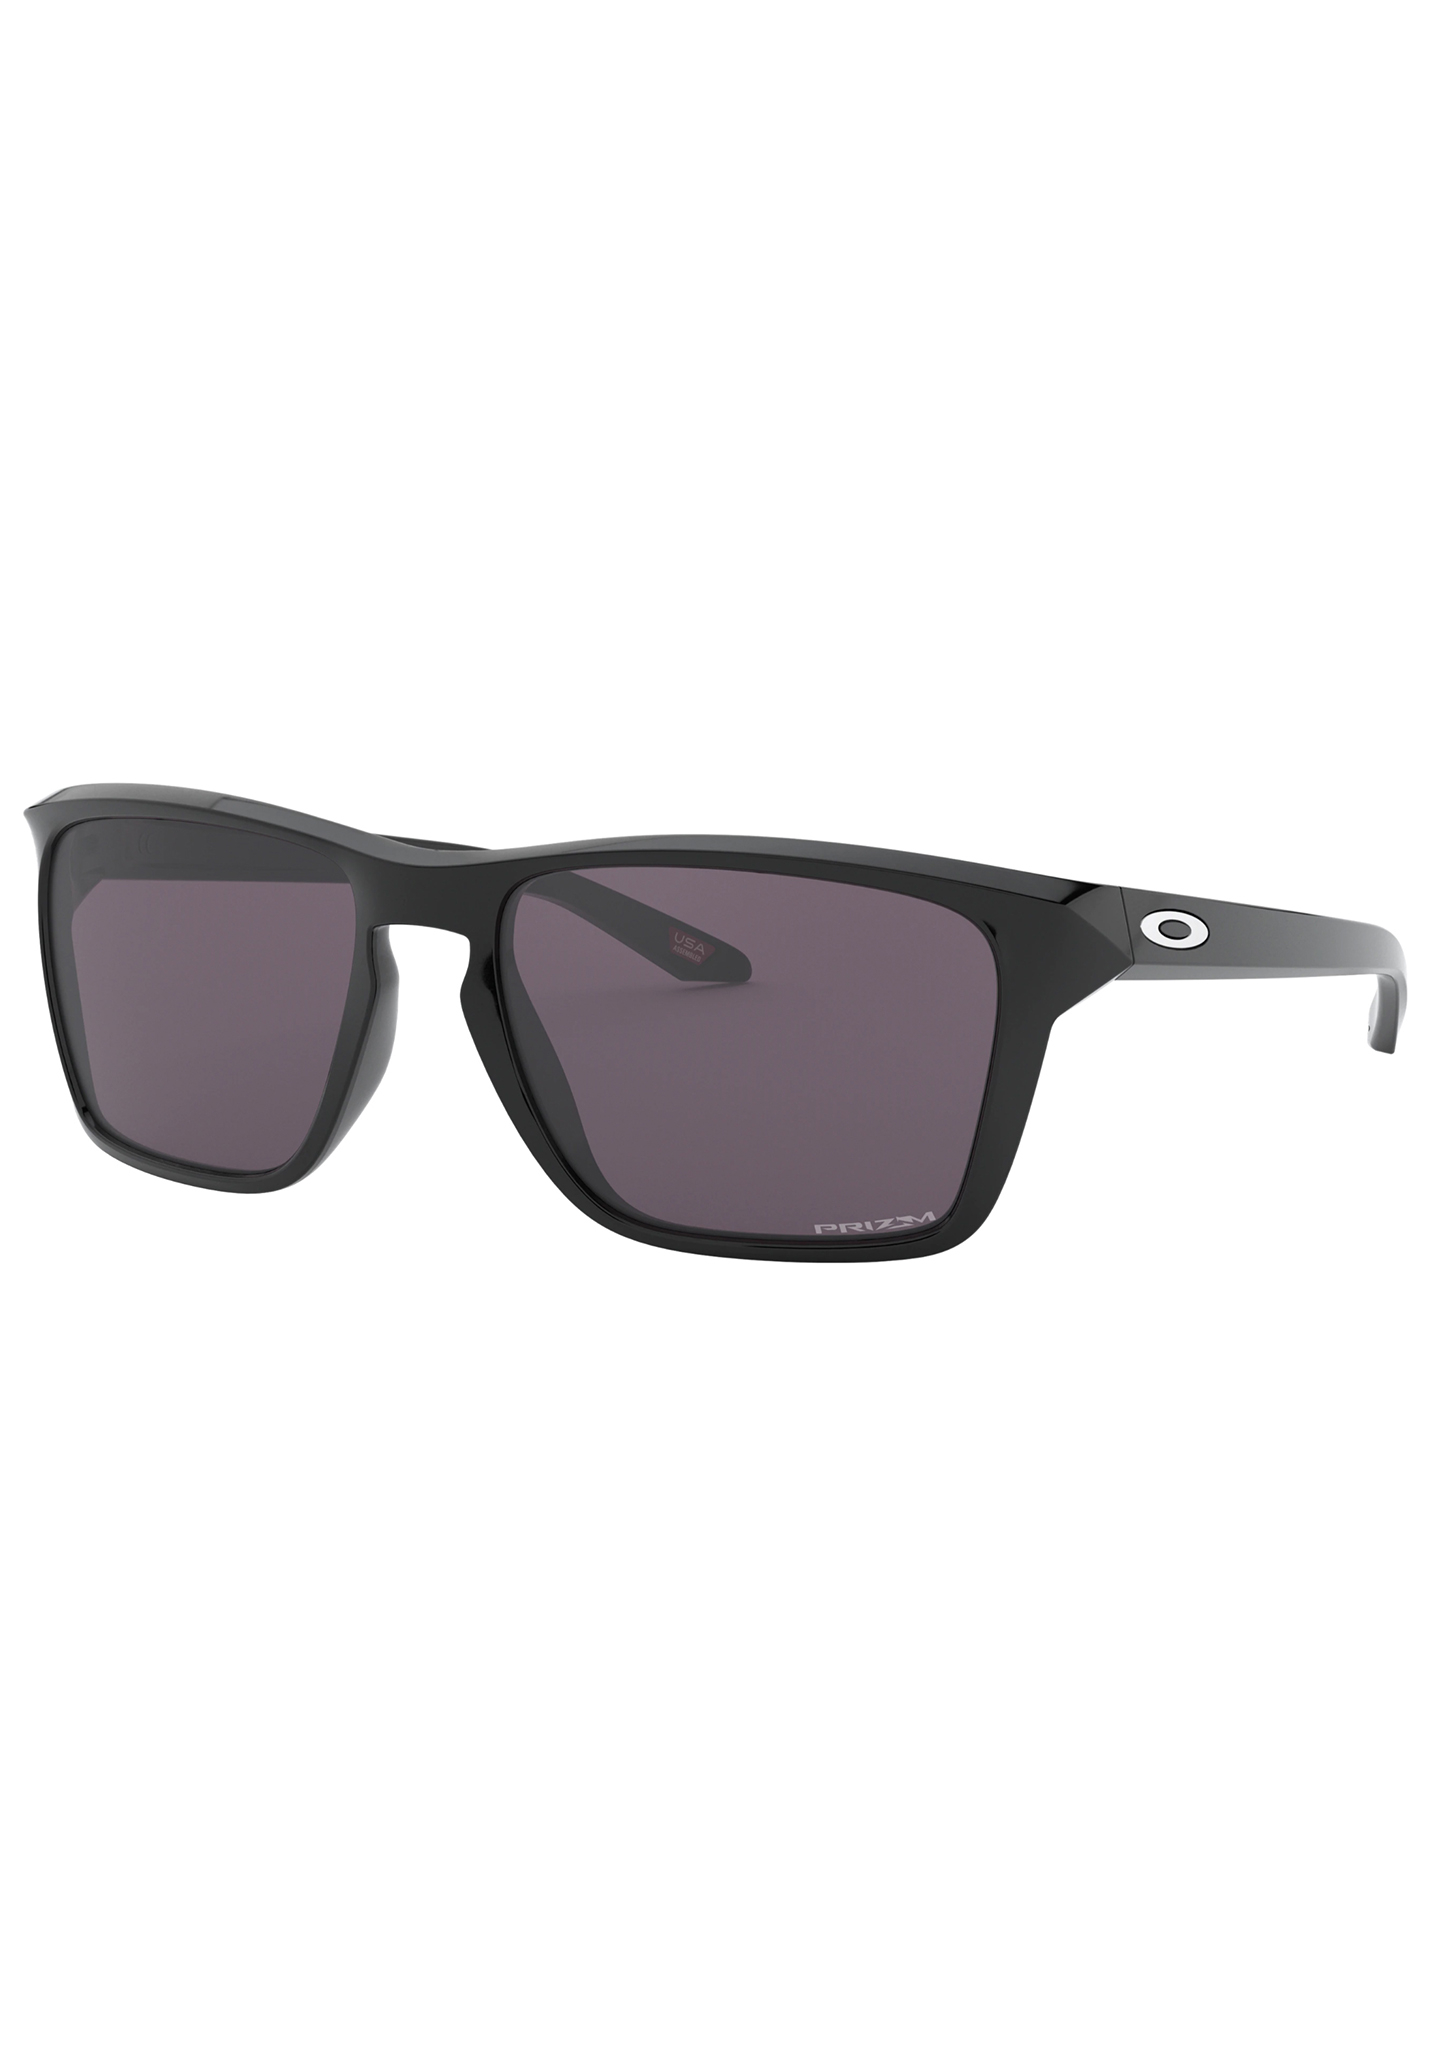 Oakley Sylas Sonnenbrillen schwarz poliert/prizm grau One Size